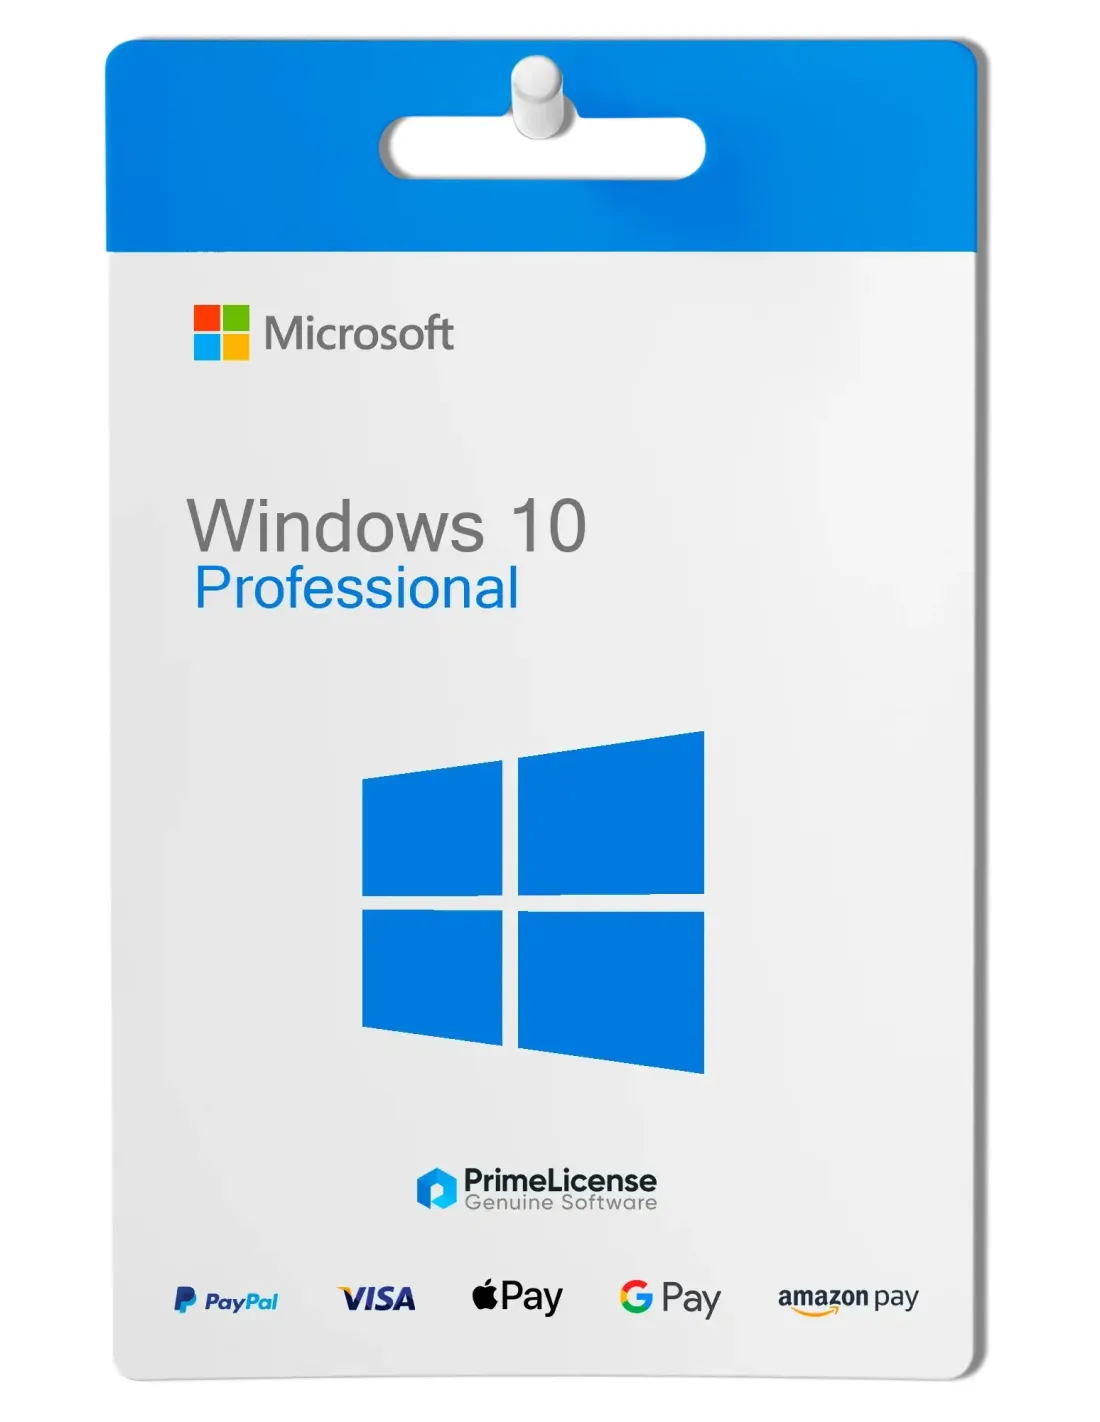 Acquista la chiave di attivazione di Windows 10 Professional